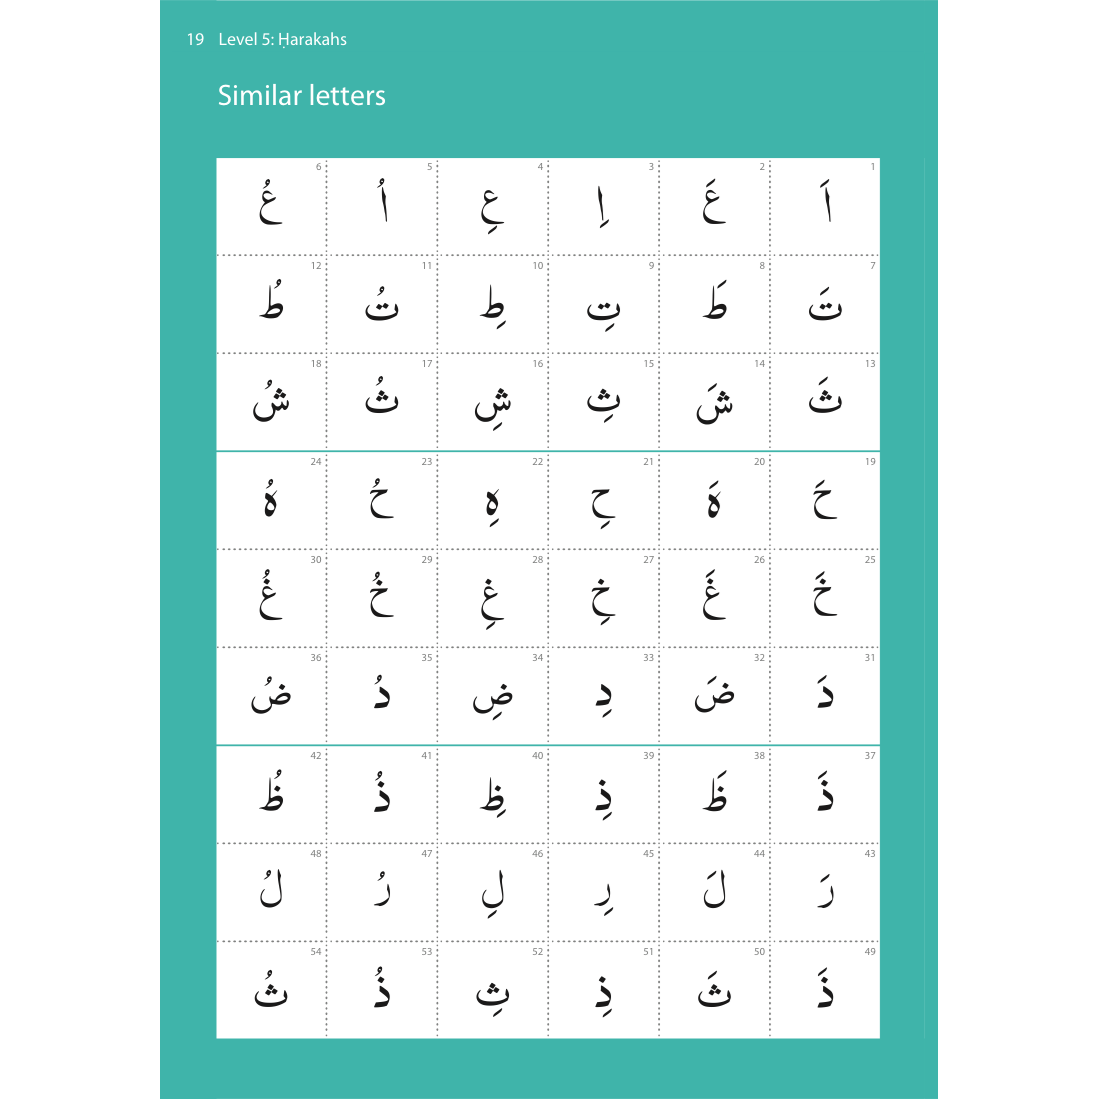 Abridged Qaidah – Learn to Read Series by Safar